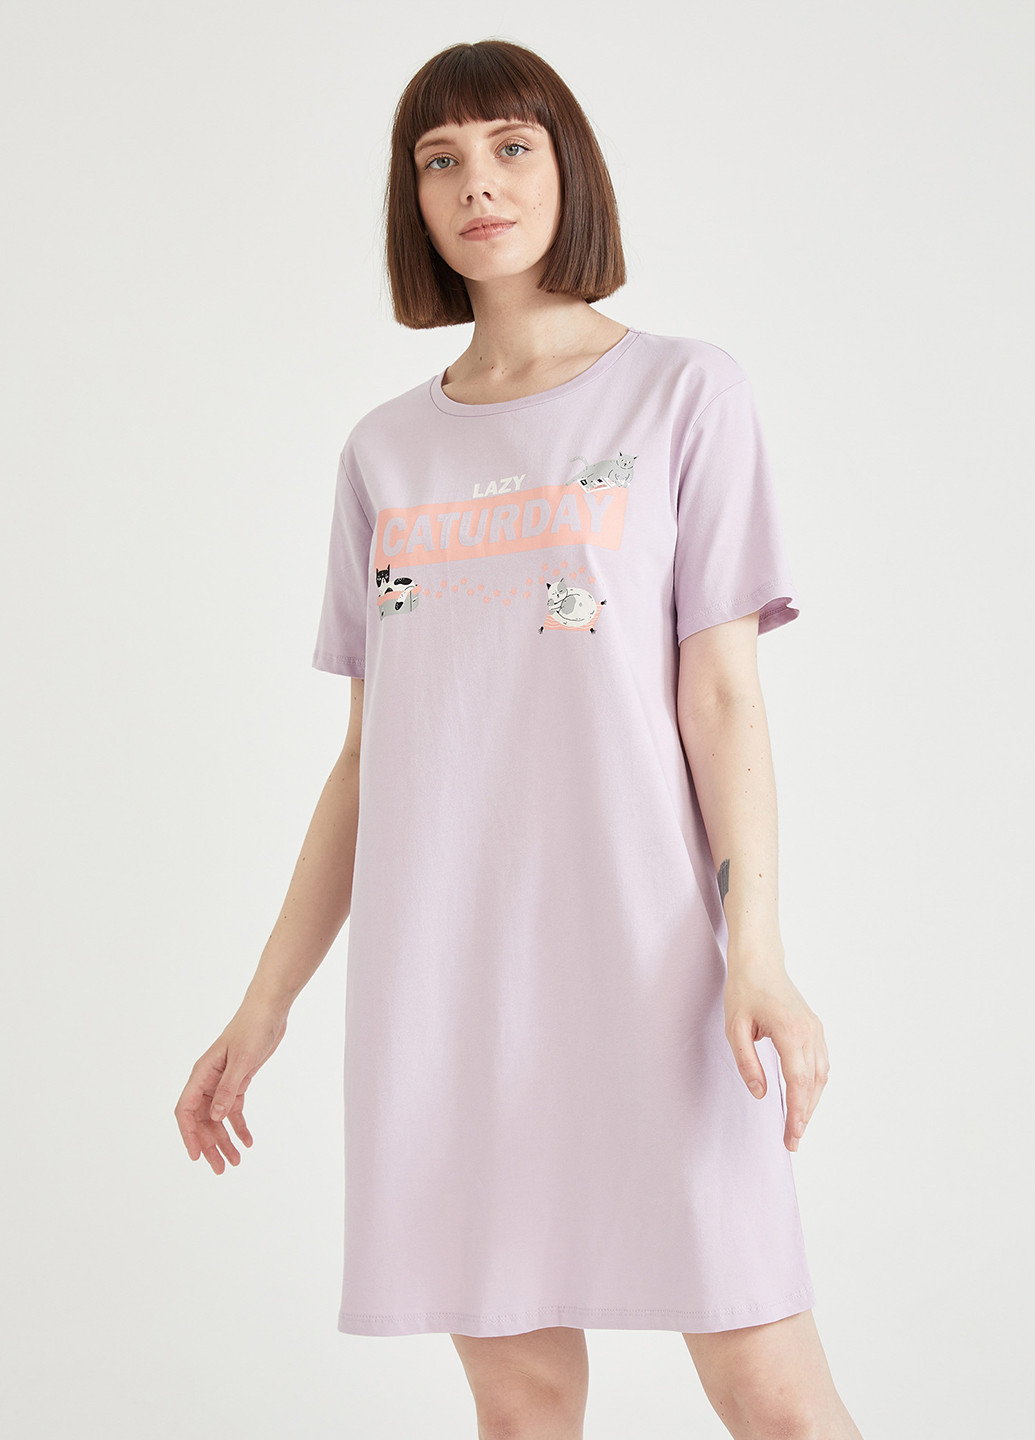 Светло-лиловое домашнее платье платье-футболка DeFacto